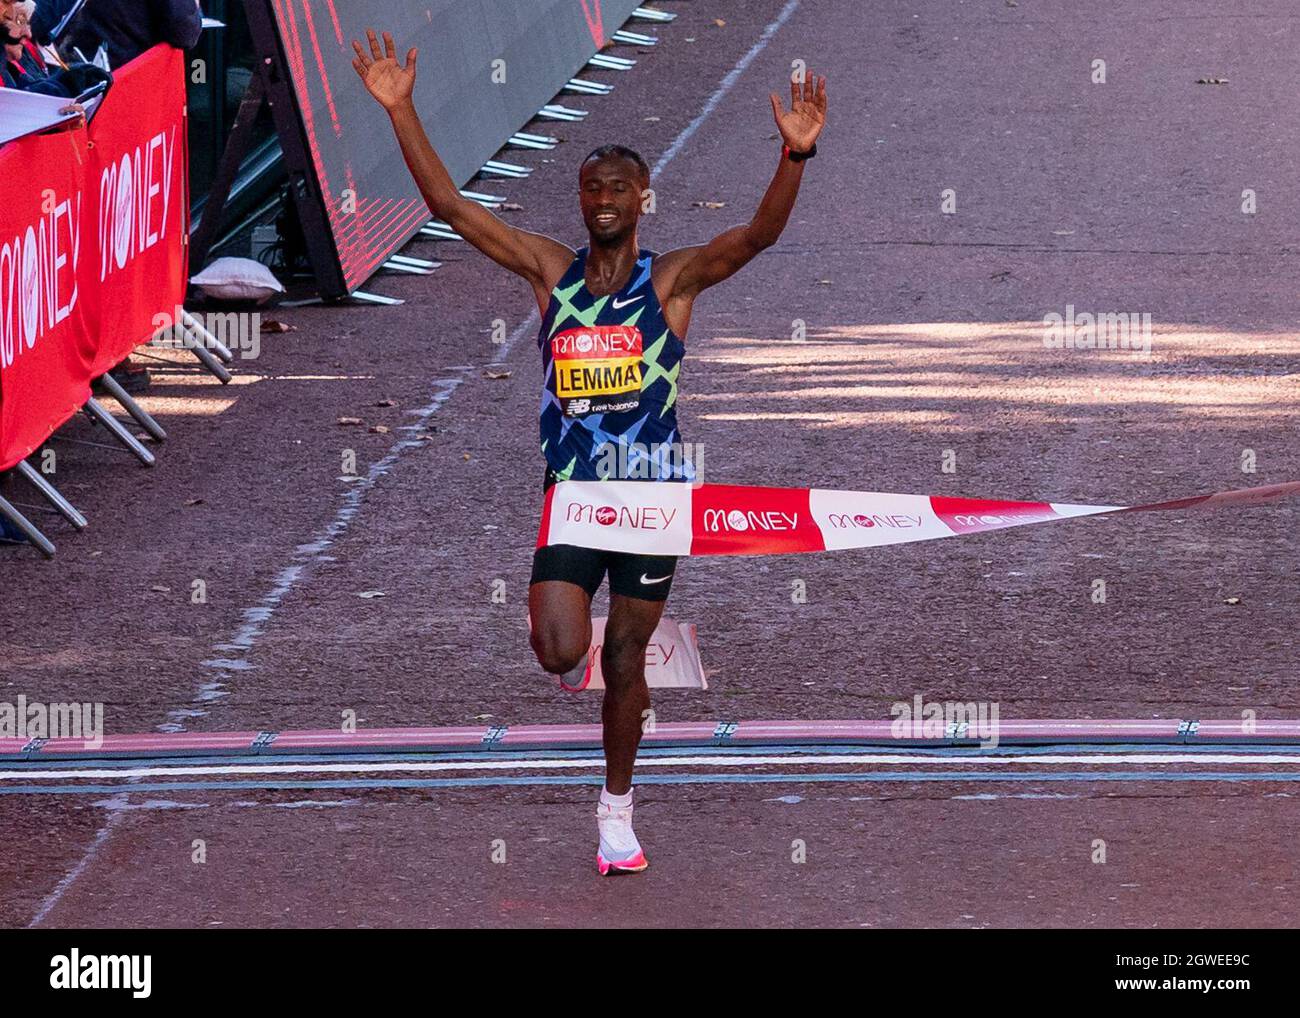 (211003) -- LONDRES, le 3 octobre 2021 (Xinhua) -- Sisay Lemma d'Ethiopie célèbre après avoir remporté la course d'élite masculine au Marathon de Londres 2021 à Londres, en Grande-Bretagne, le 3 octobre 2021. (Photo de Richard Washbrooke/Xinhua) Banque D'Images